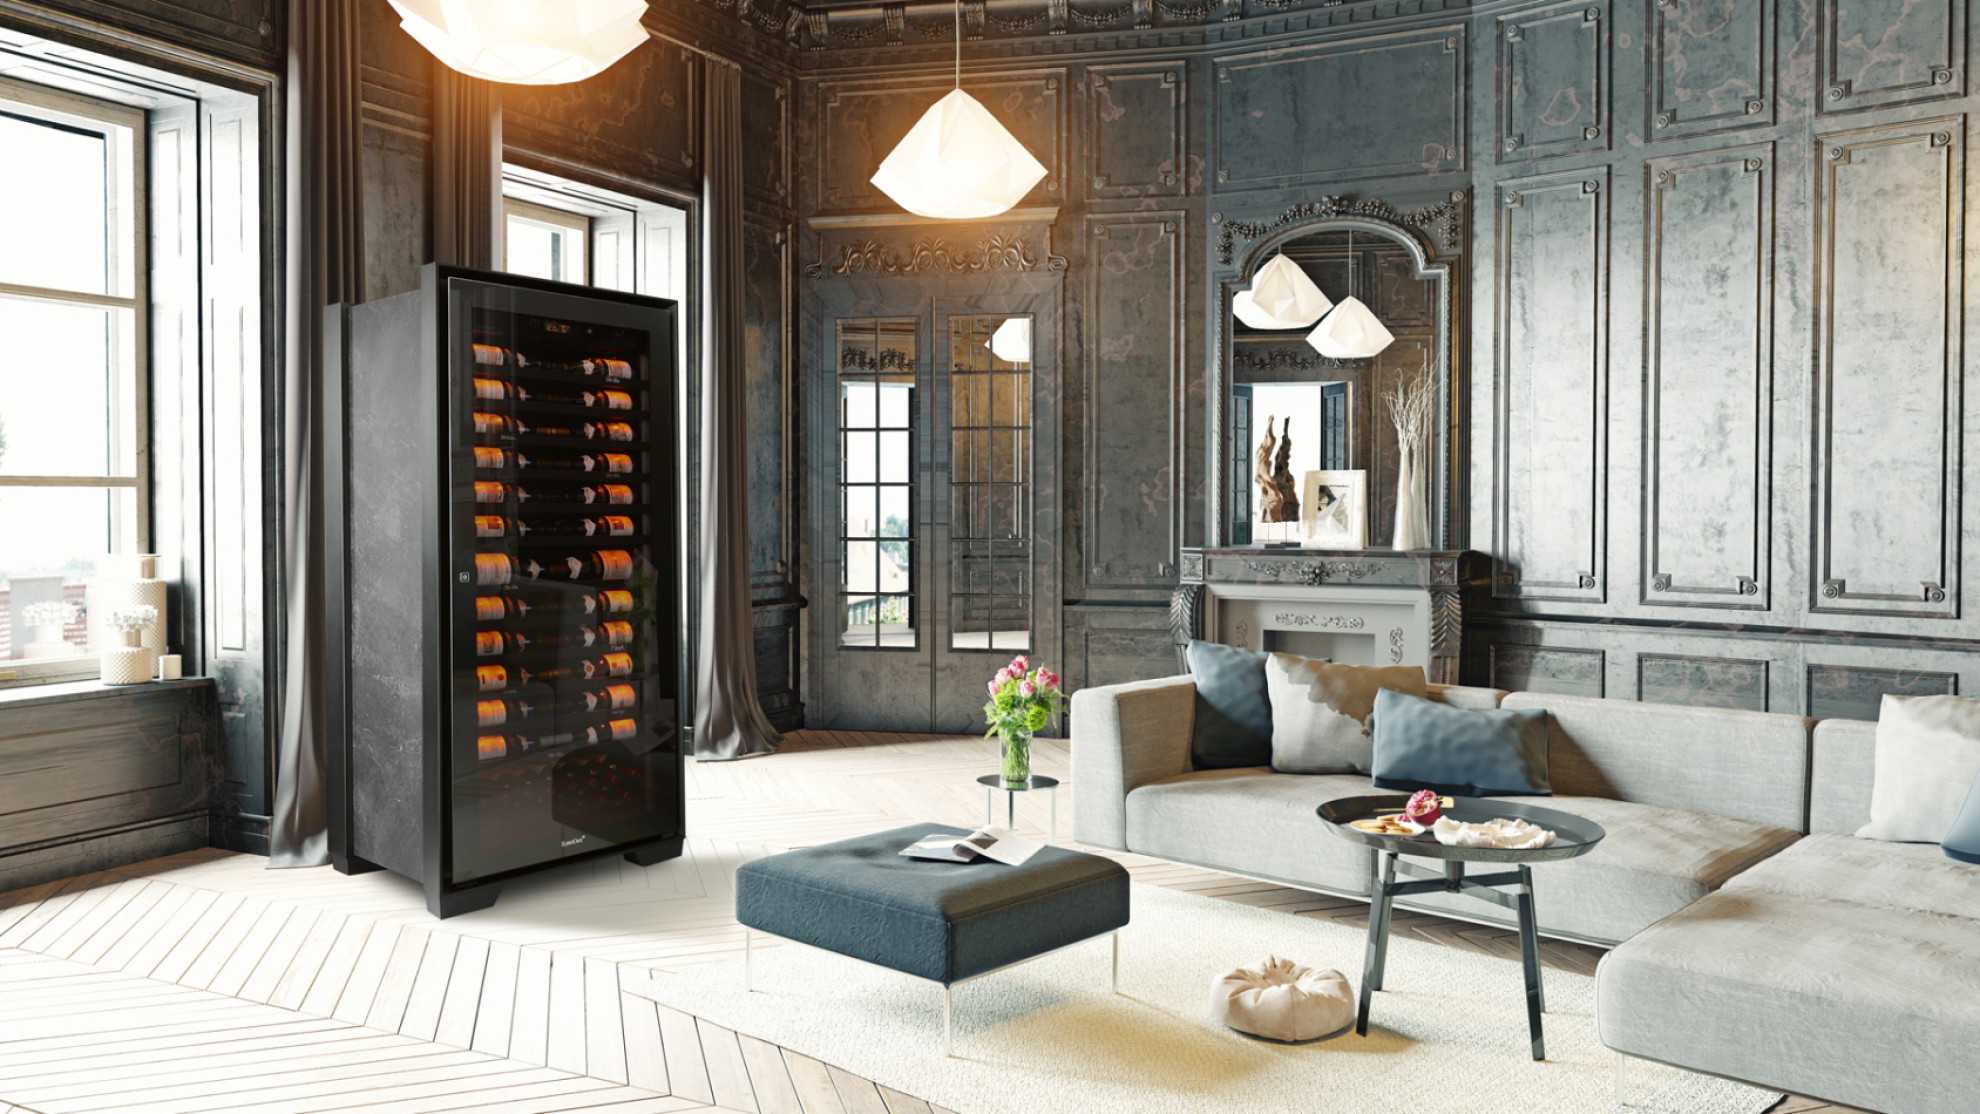 collection-royale-cave-salon-luxe-haut-de-gamme-marbre-cheminee-vin-banniere.jpg